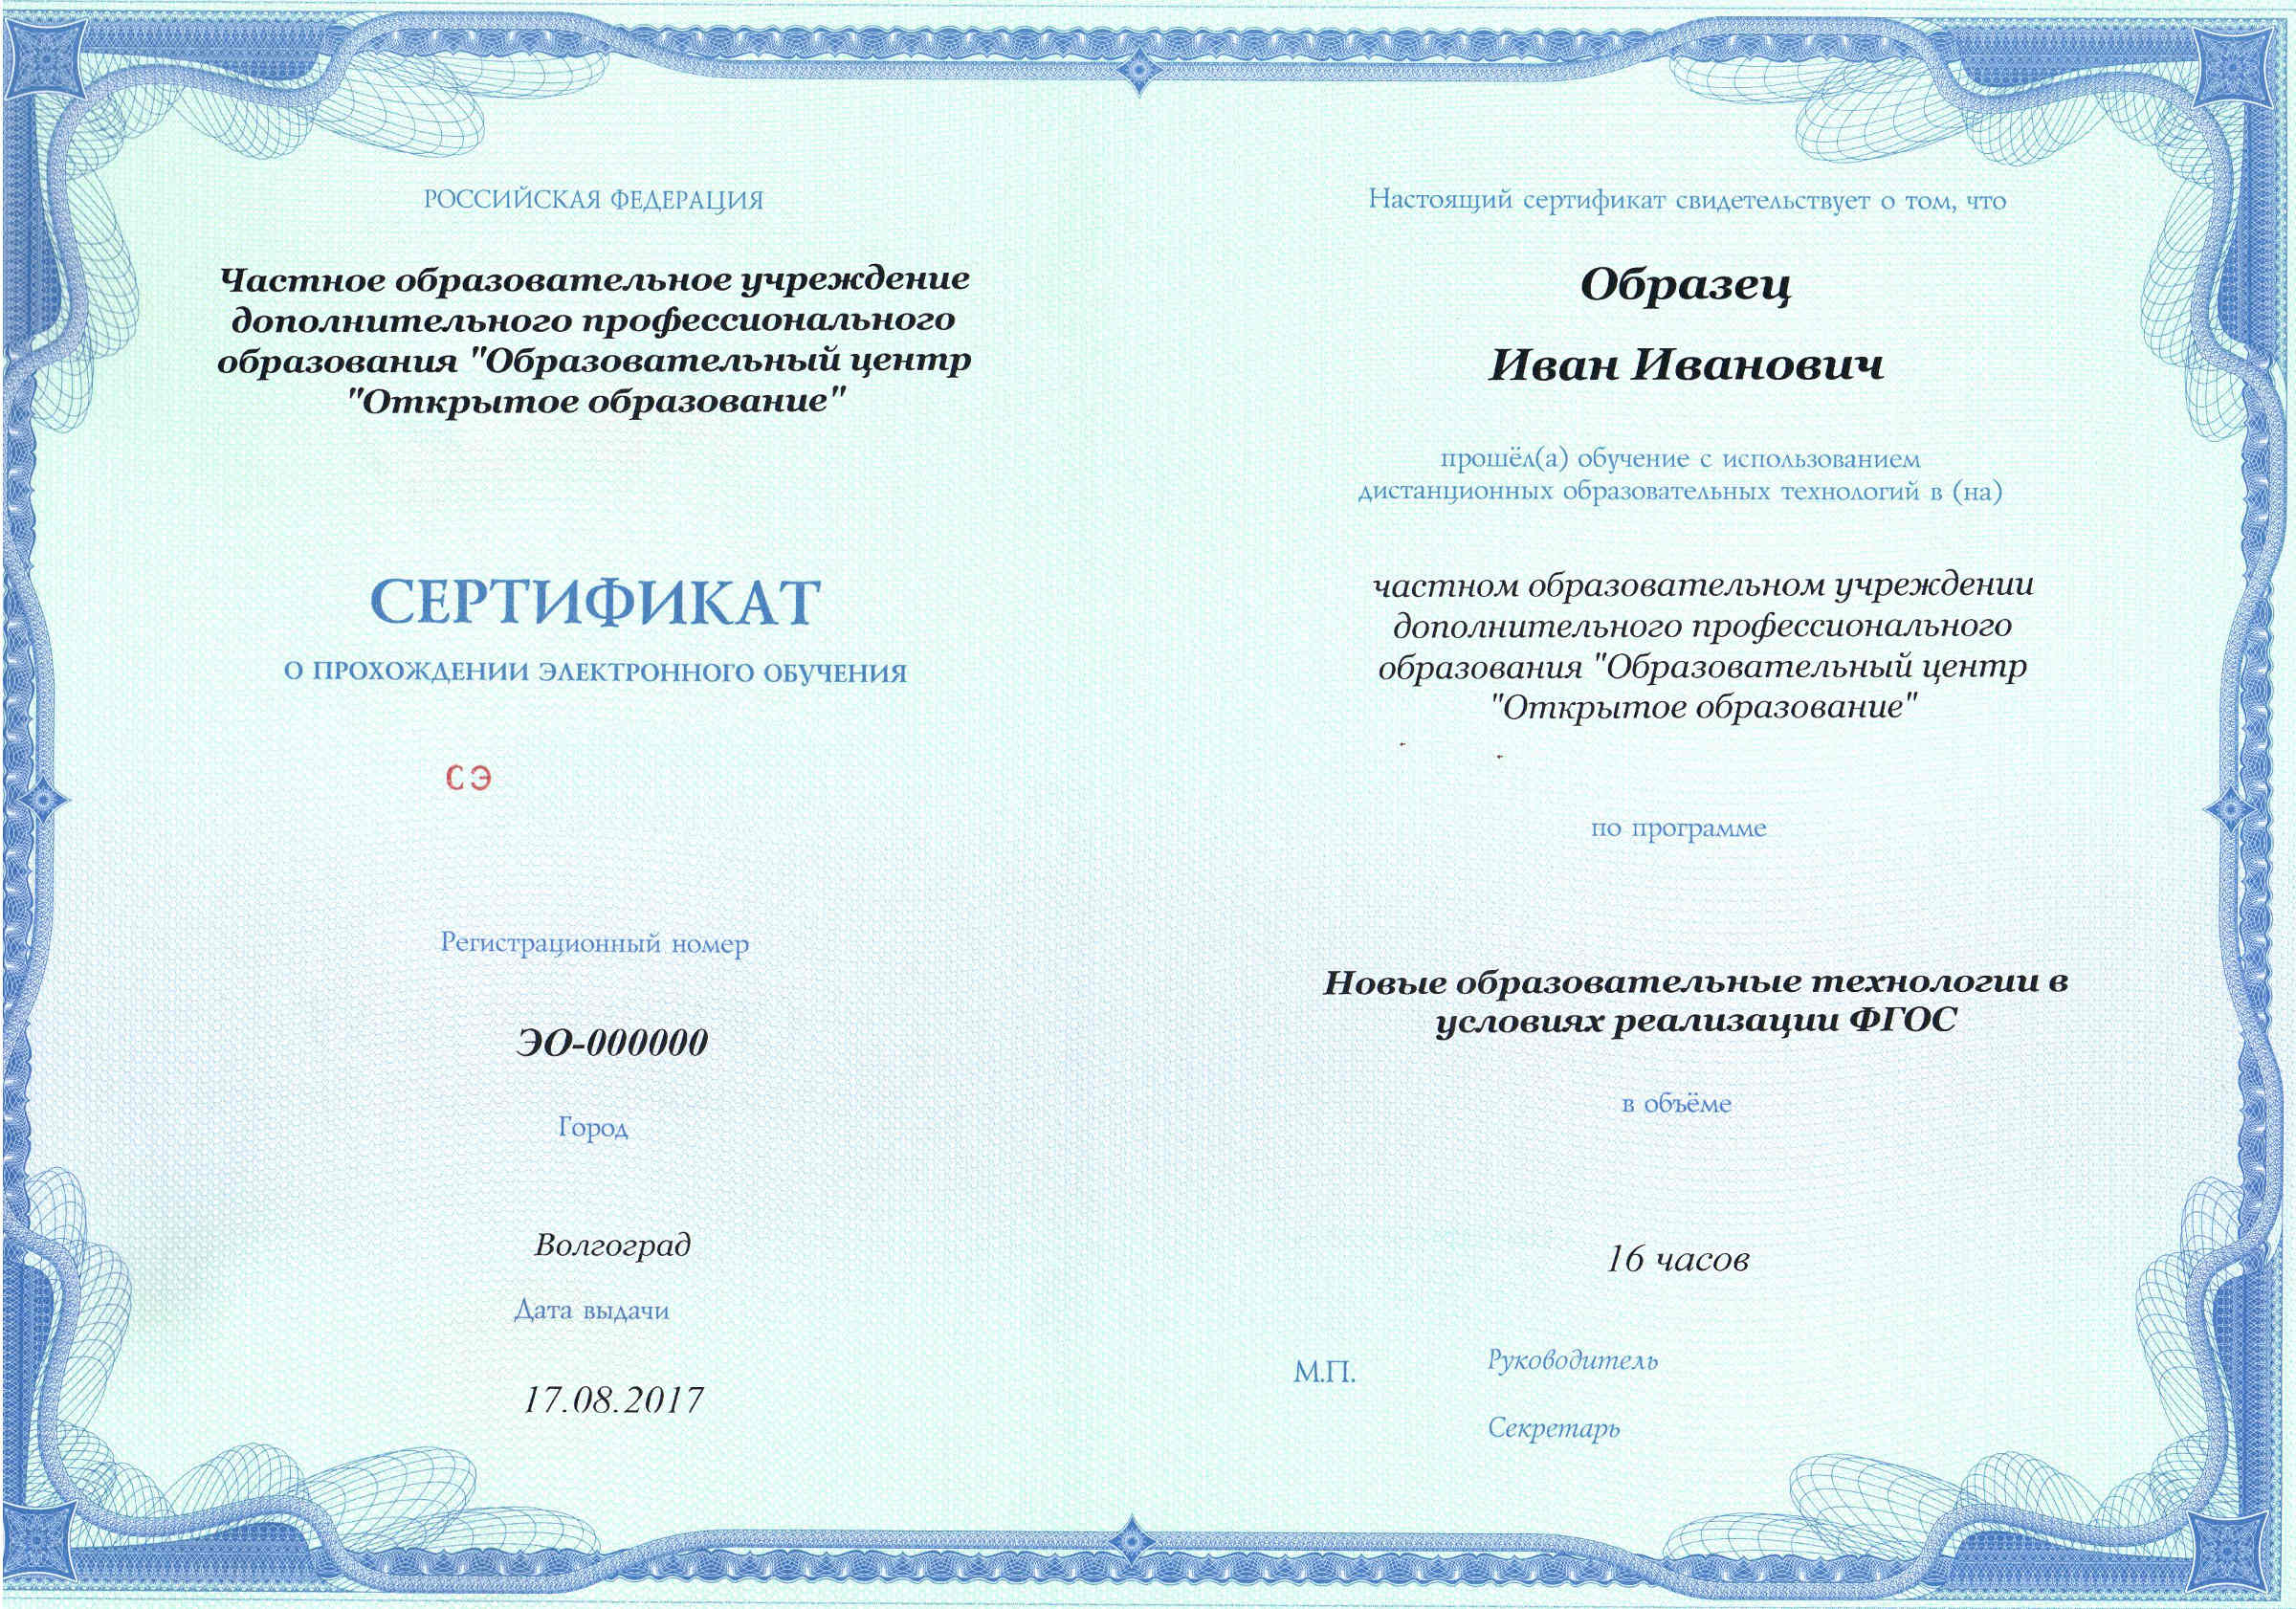 Сертификат о прохождении электронного обучения в условиях реализации ФГОС